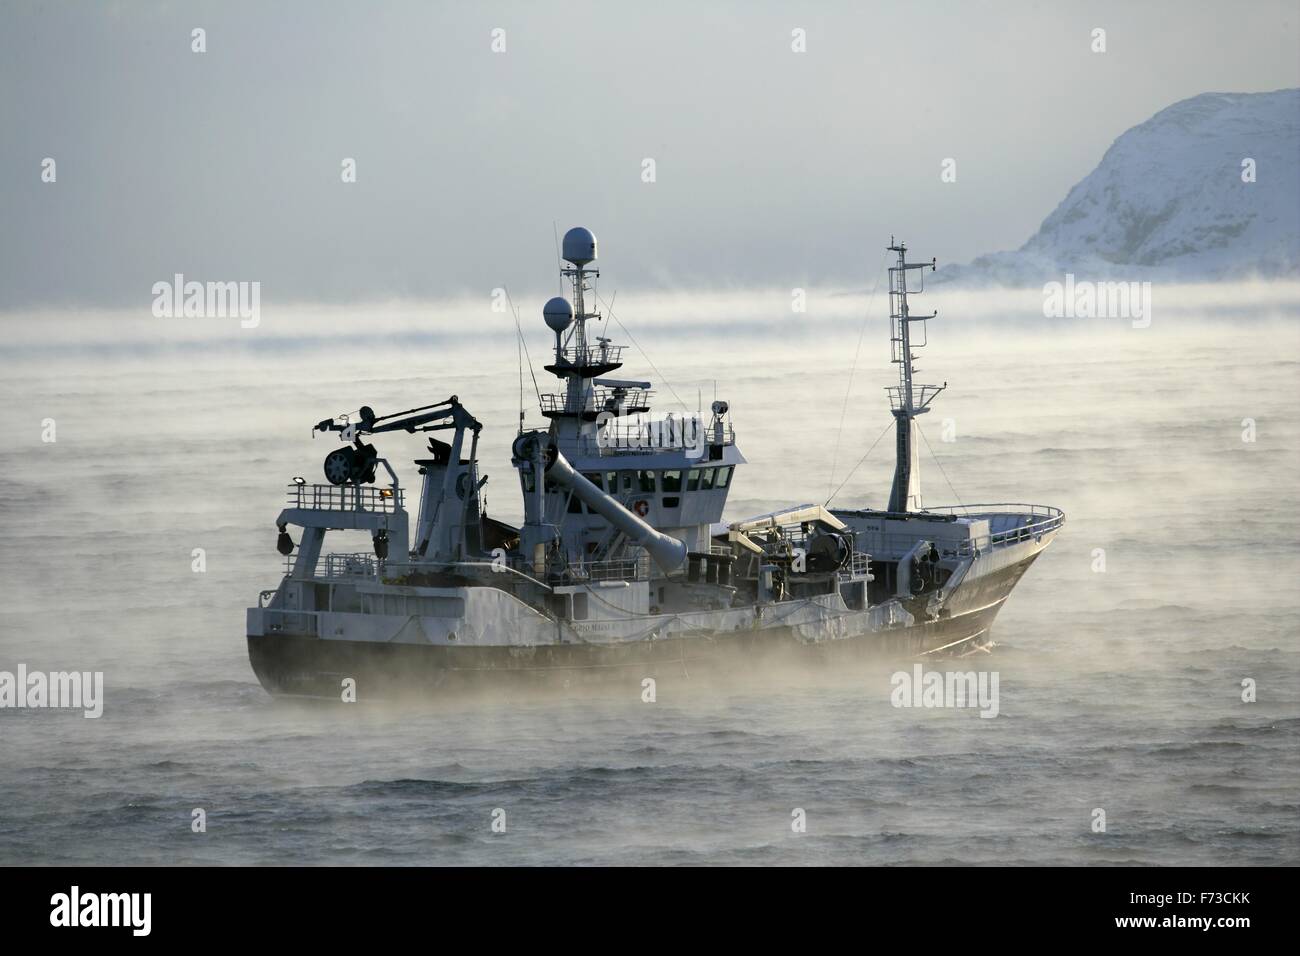 Les pêcheurs de la mer de Barents en SeaBarents l'océan Glacial Arctique. La Norvège Banque D'Images